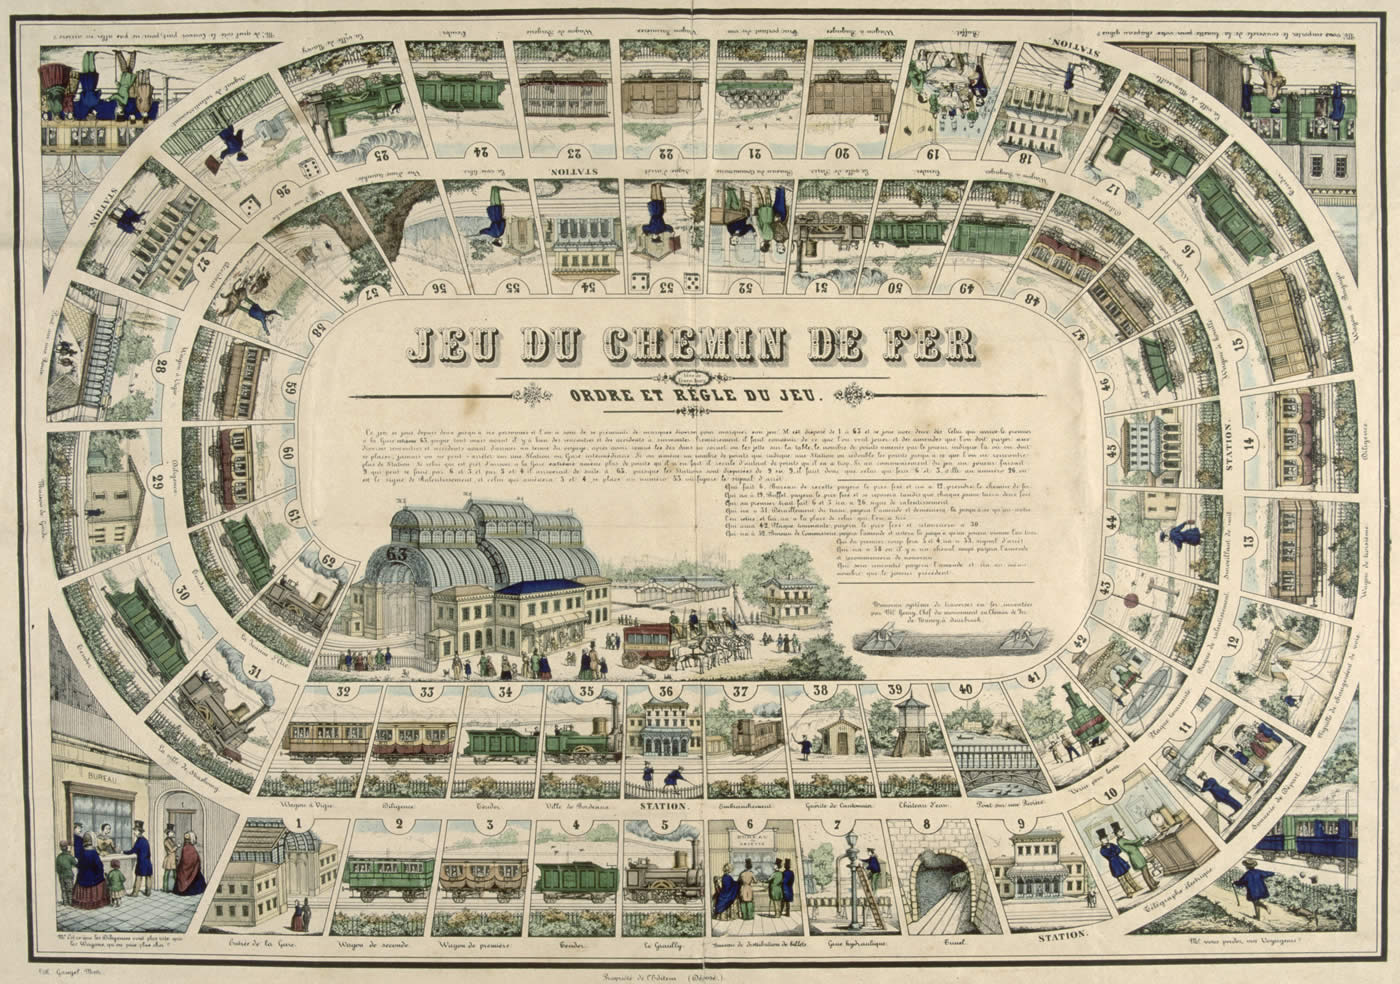 Le jeu du chemin de fer français - Histoire analysée en images et